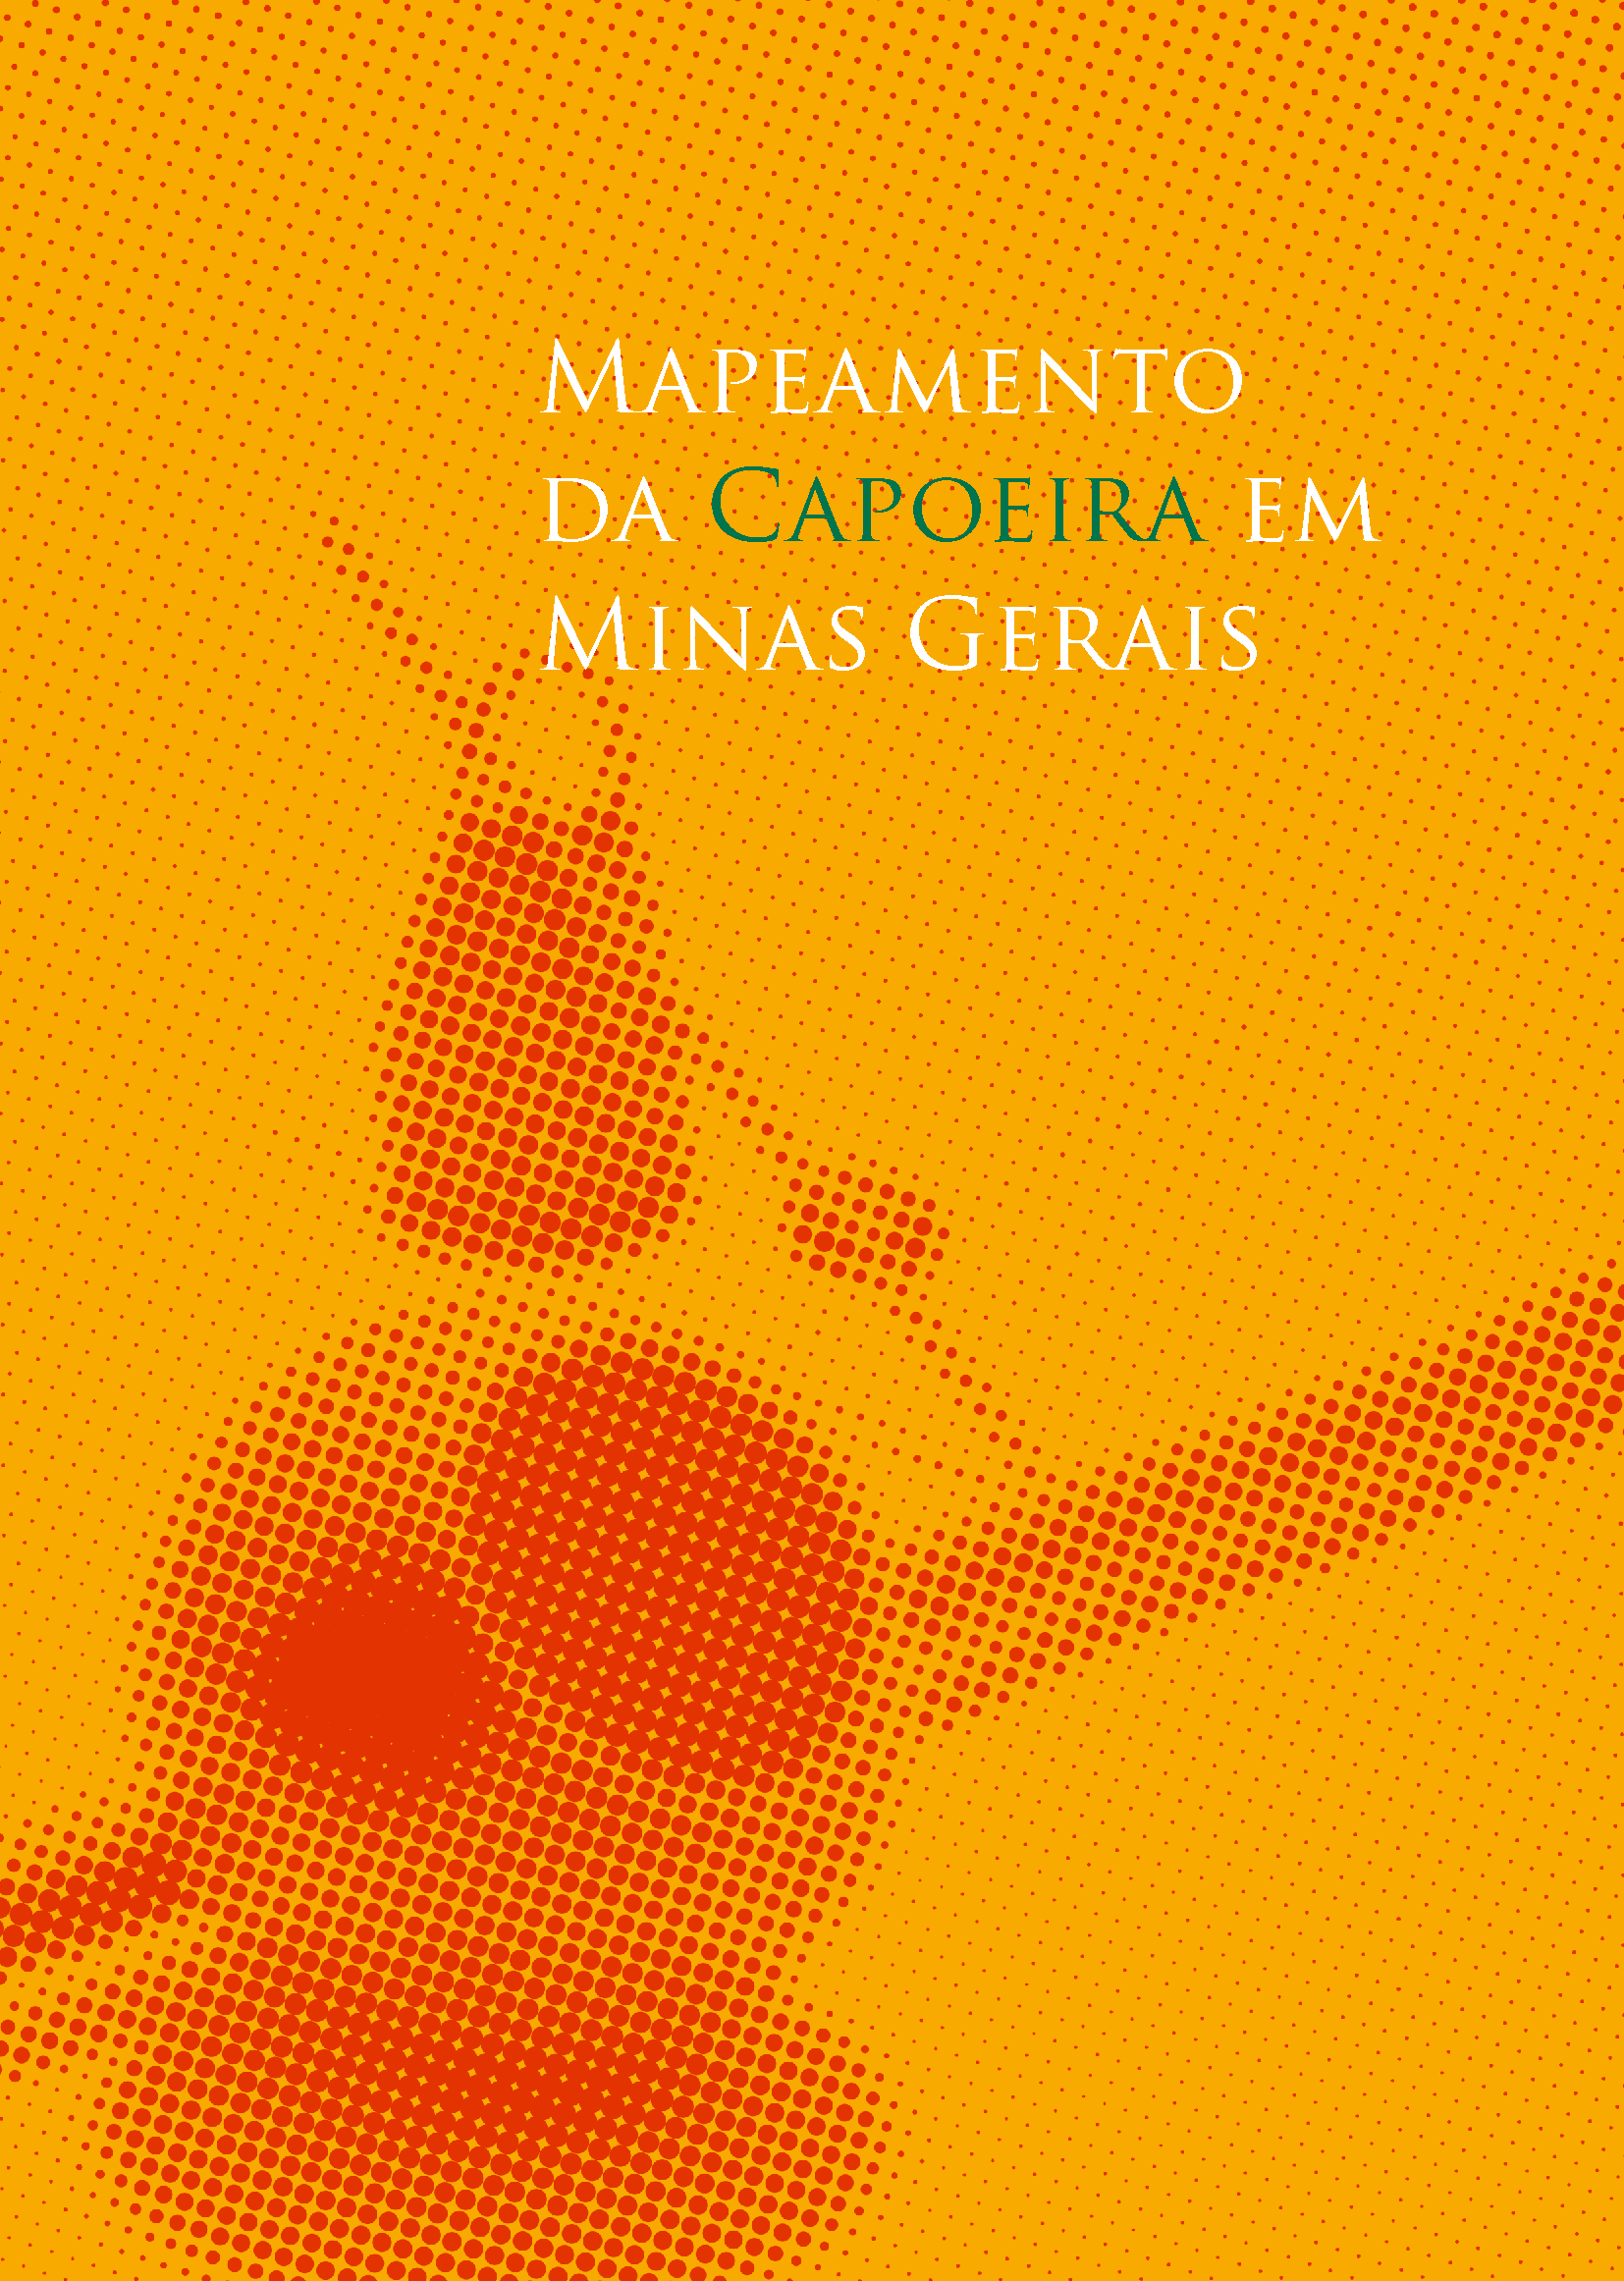 mapeamento_da_capoeira_de_minas_gerais